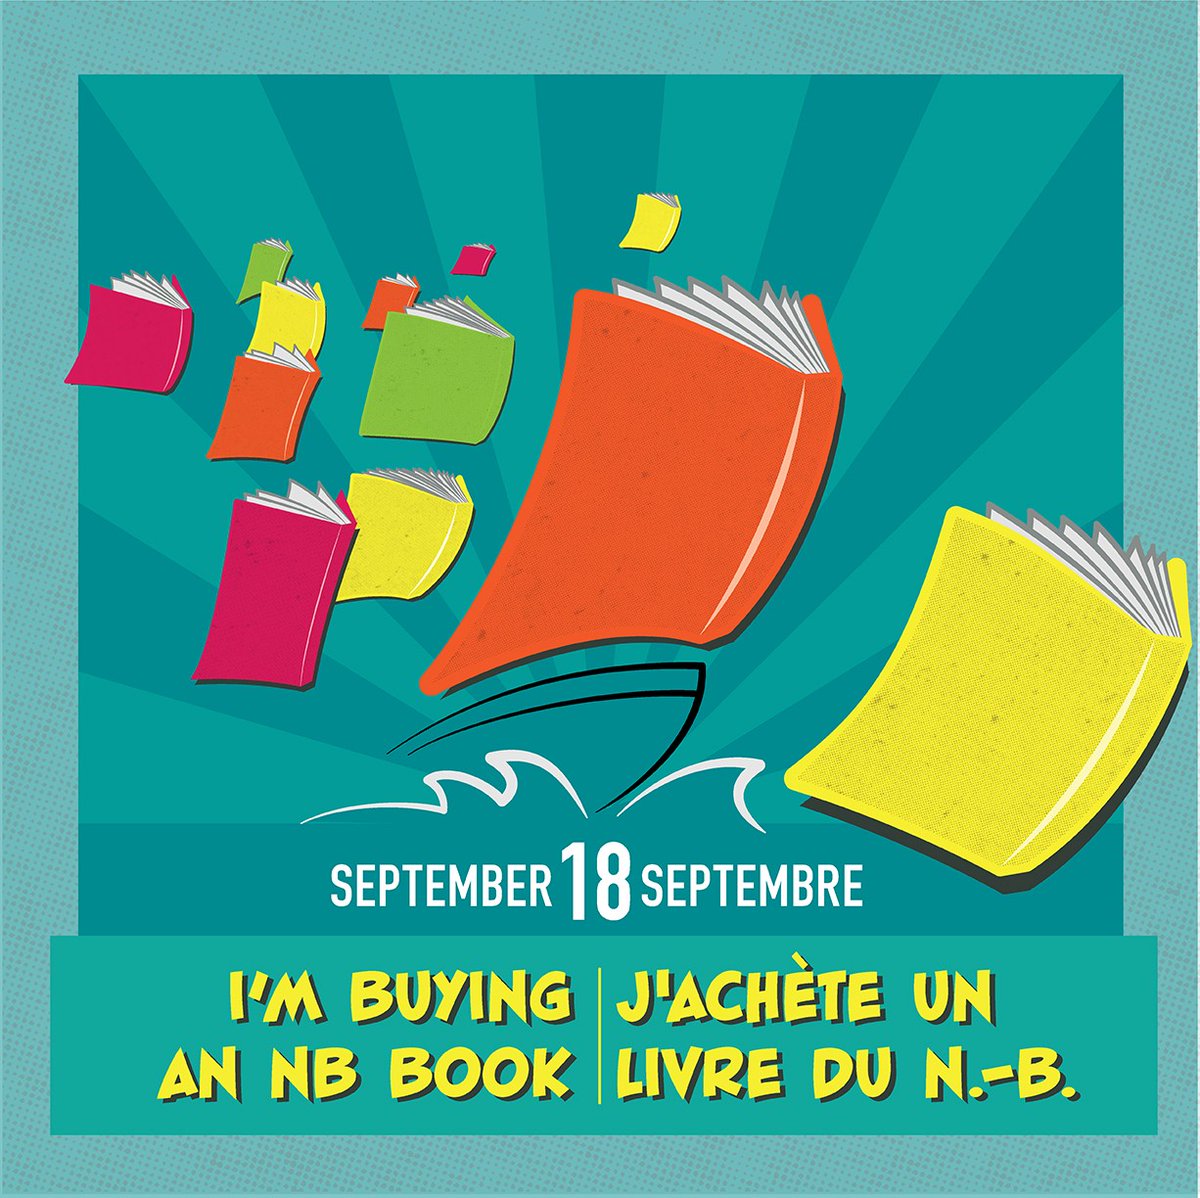 📆📚 C'est le Jour J ! Rendez-vous dans une librairie, un point de vente ou sur le site d’une librairie/d’un éditeur du N.-B. et procurez-vous des livres d'auteur·rices d’ici! Partagez vos achats sur les réseaux avec les mots-clics #MonLivreNB #JeLisLocal #18Septembre